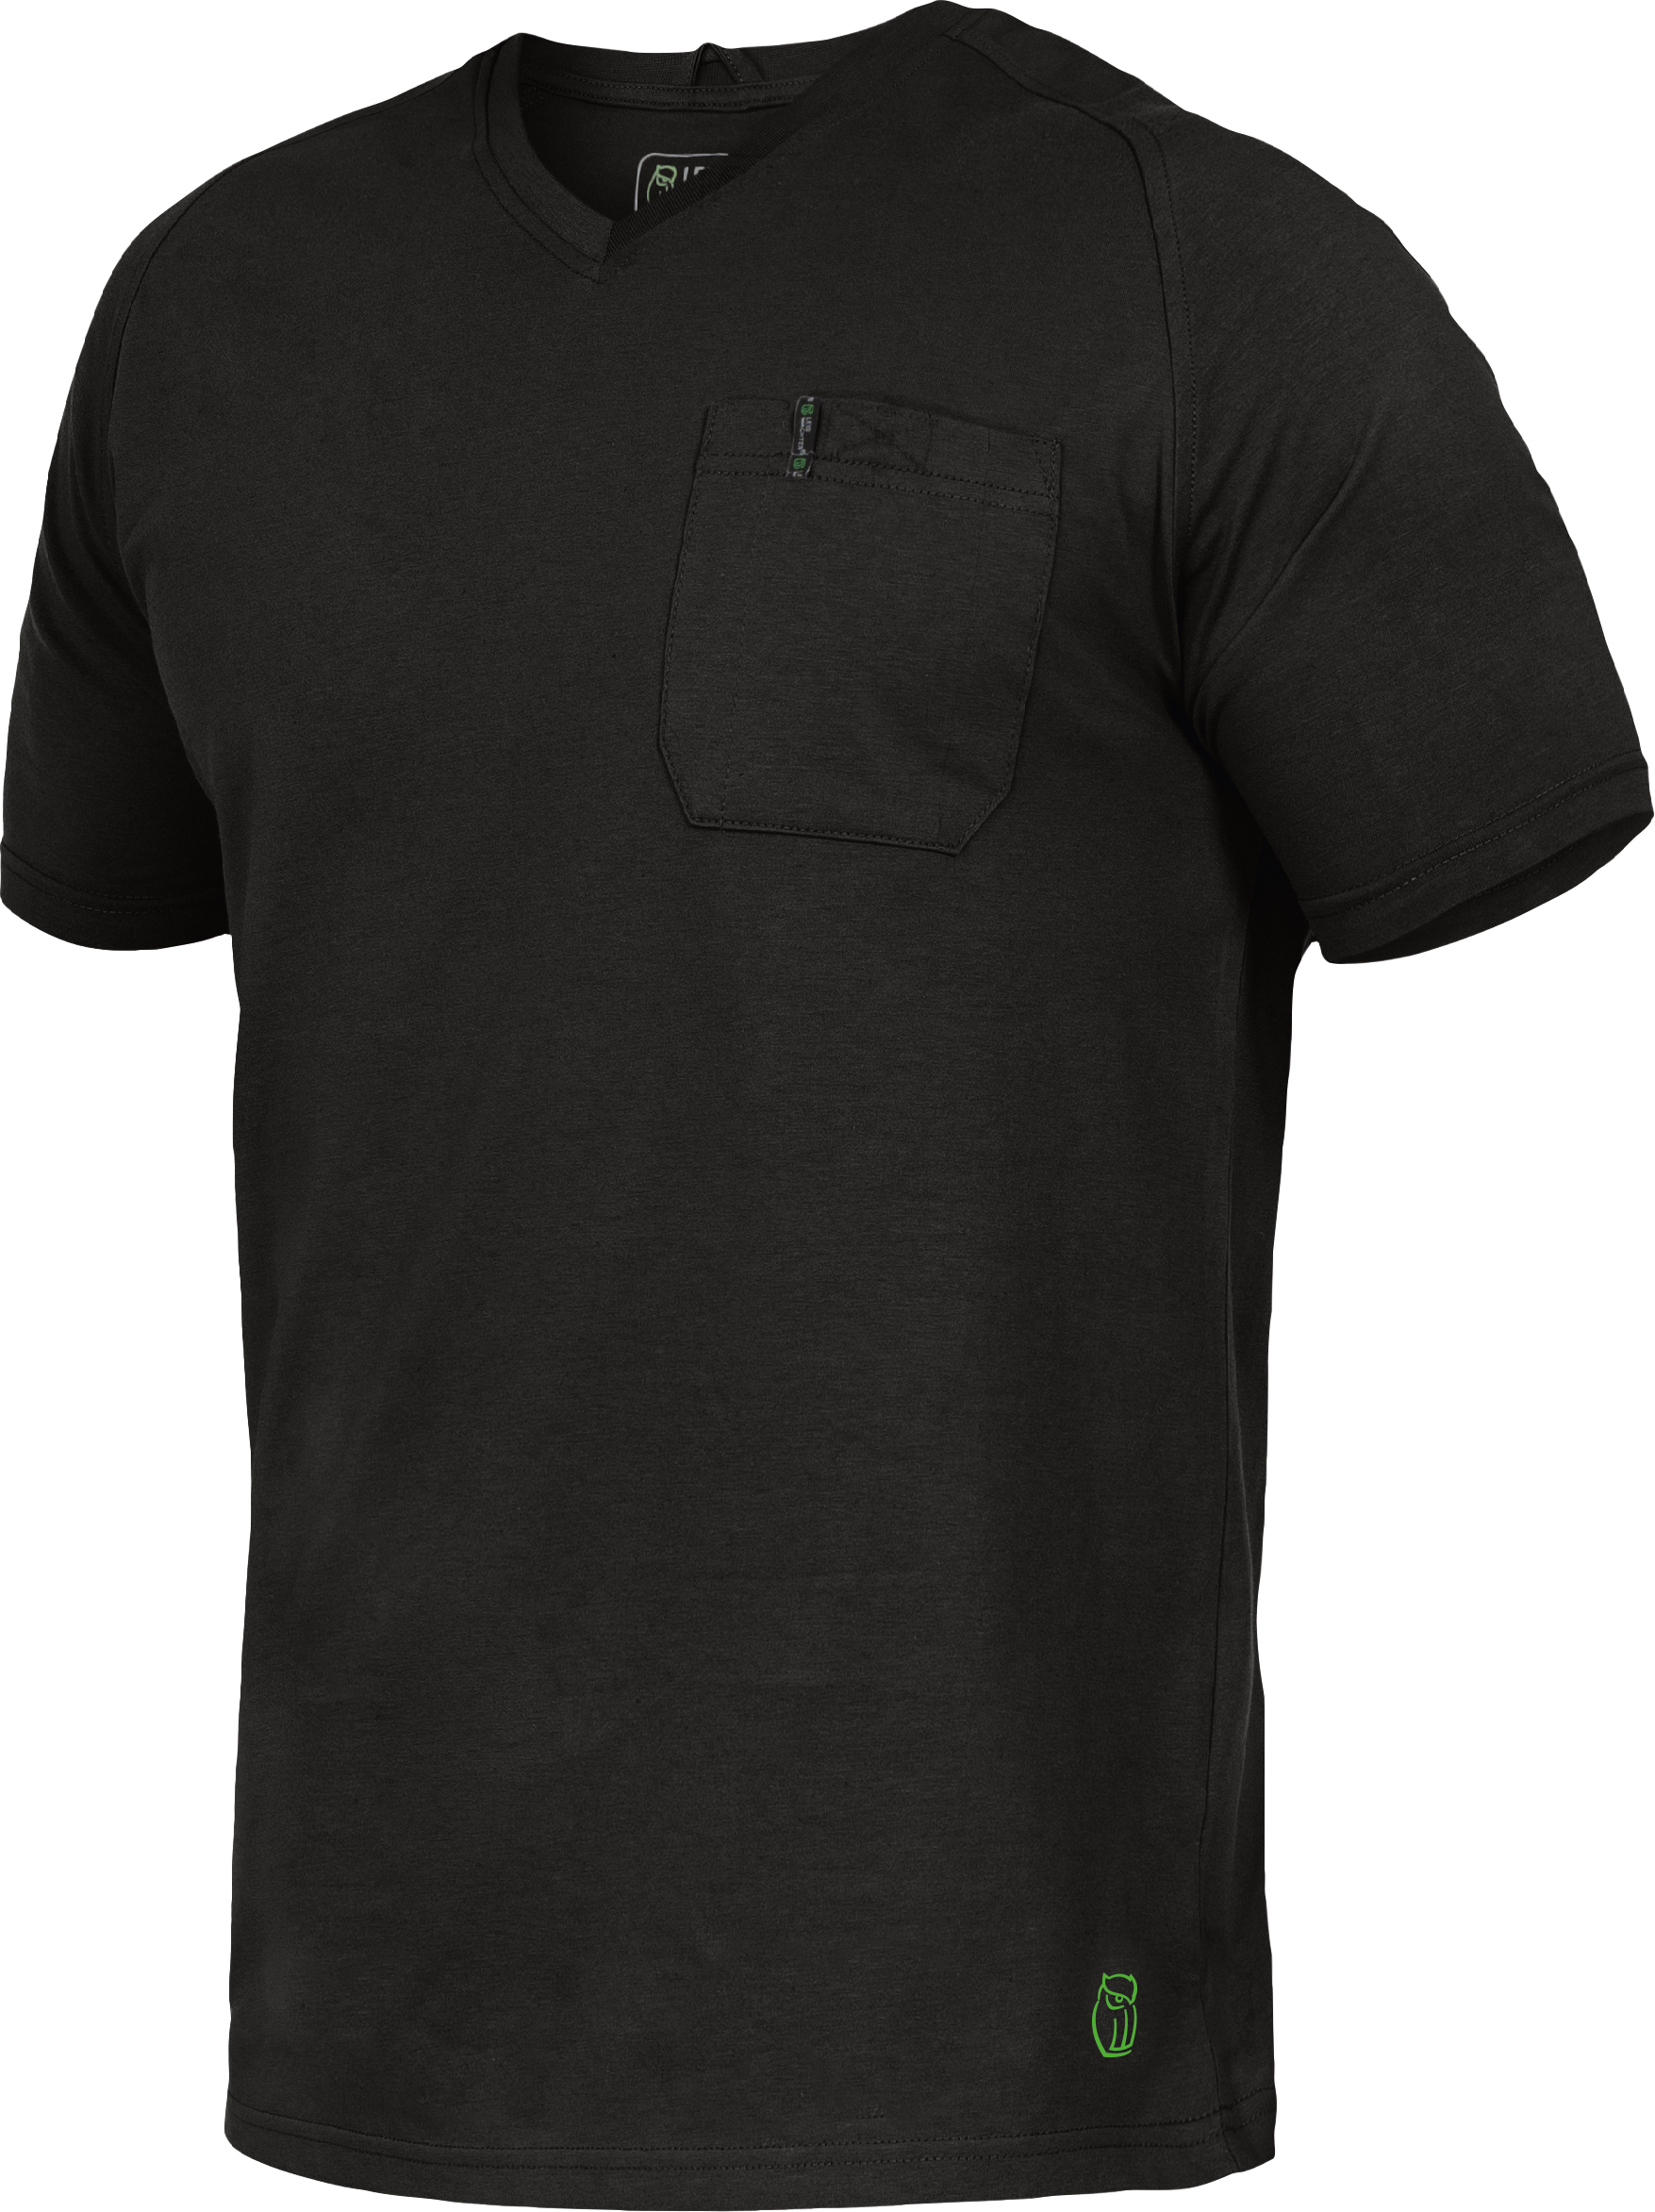 TRIUSO T-Shirt 50% BW/50% Poly. 180g schw. XXL 